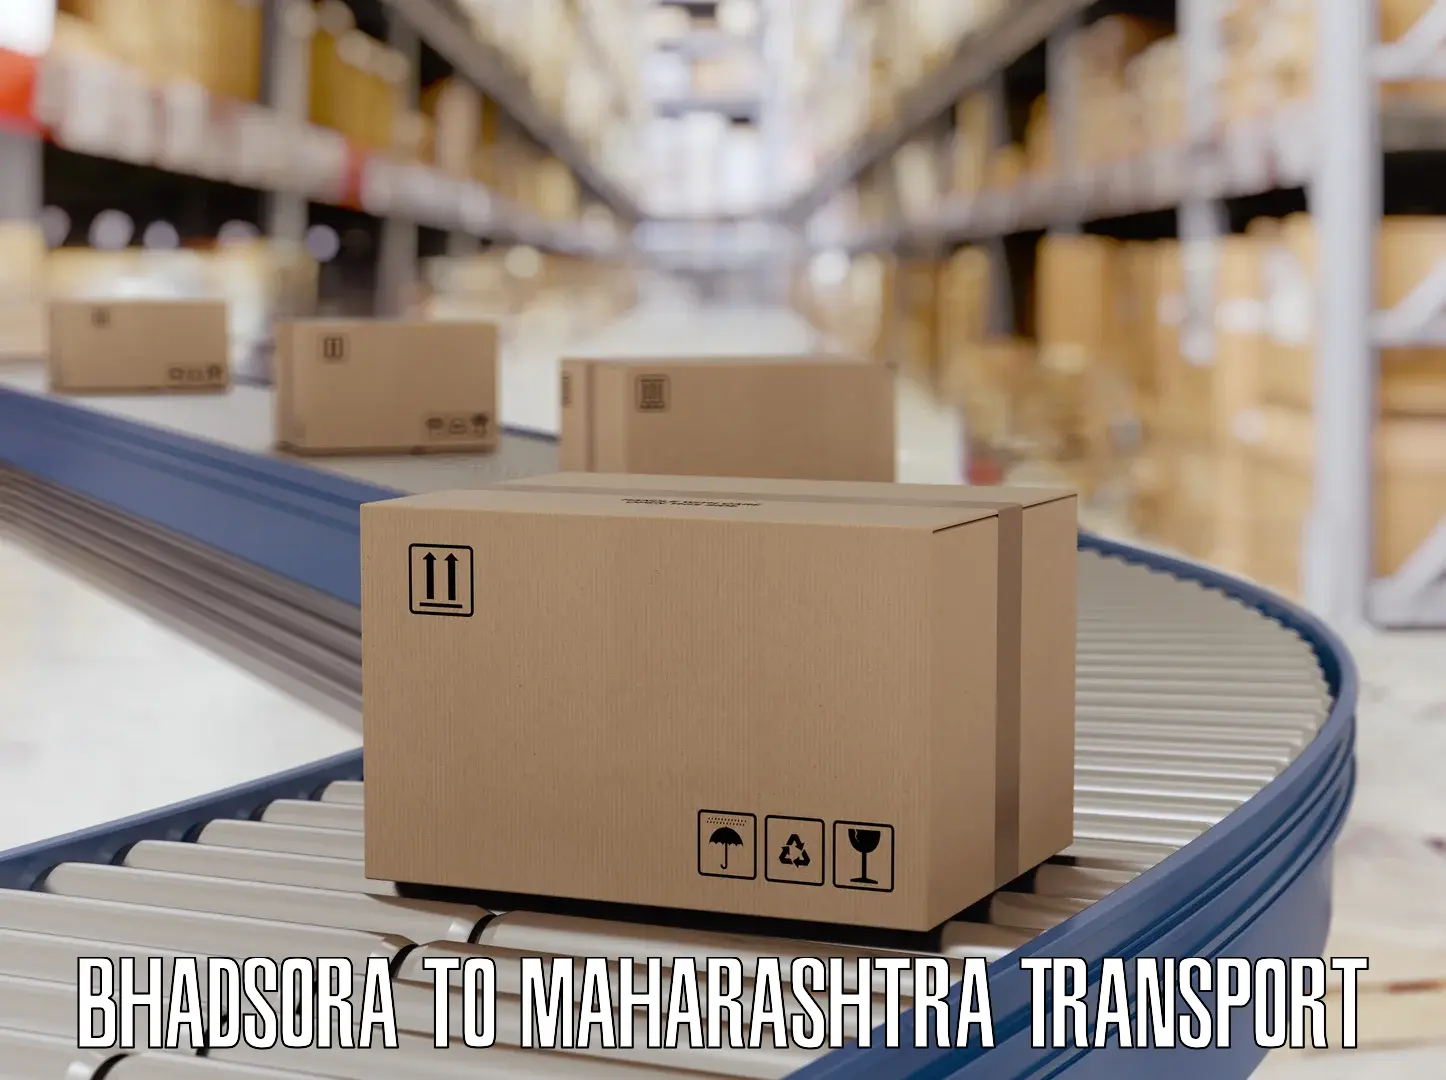 Vehicle parcel service Bhadsora to Maharashtra